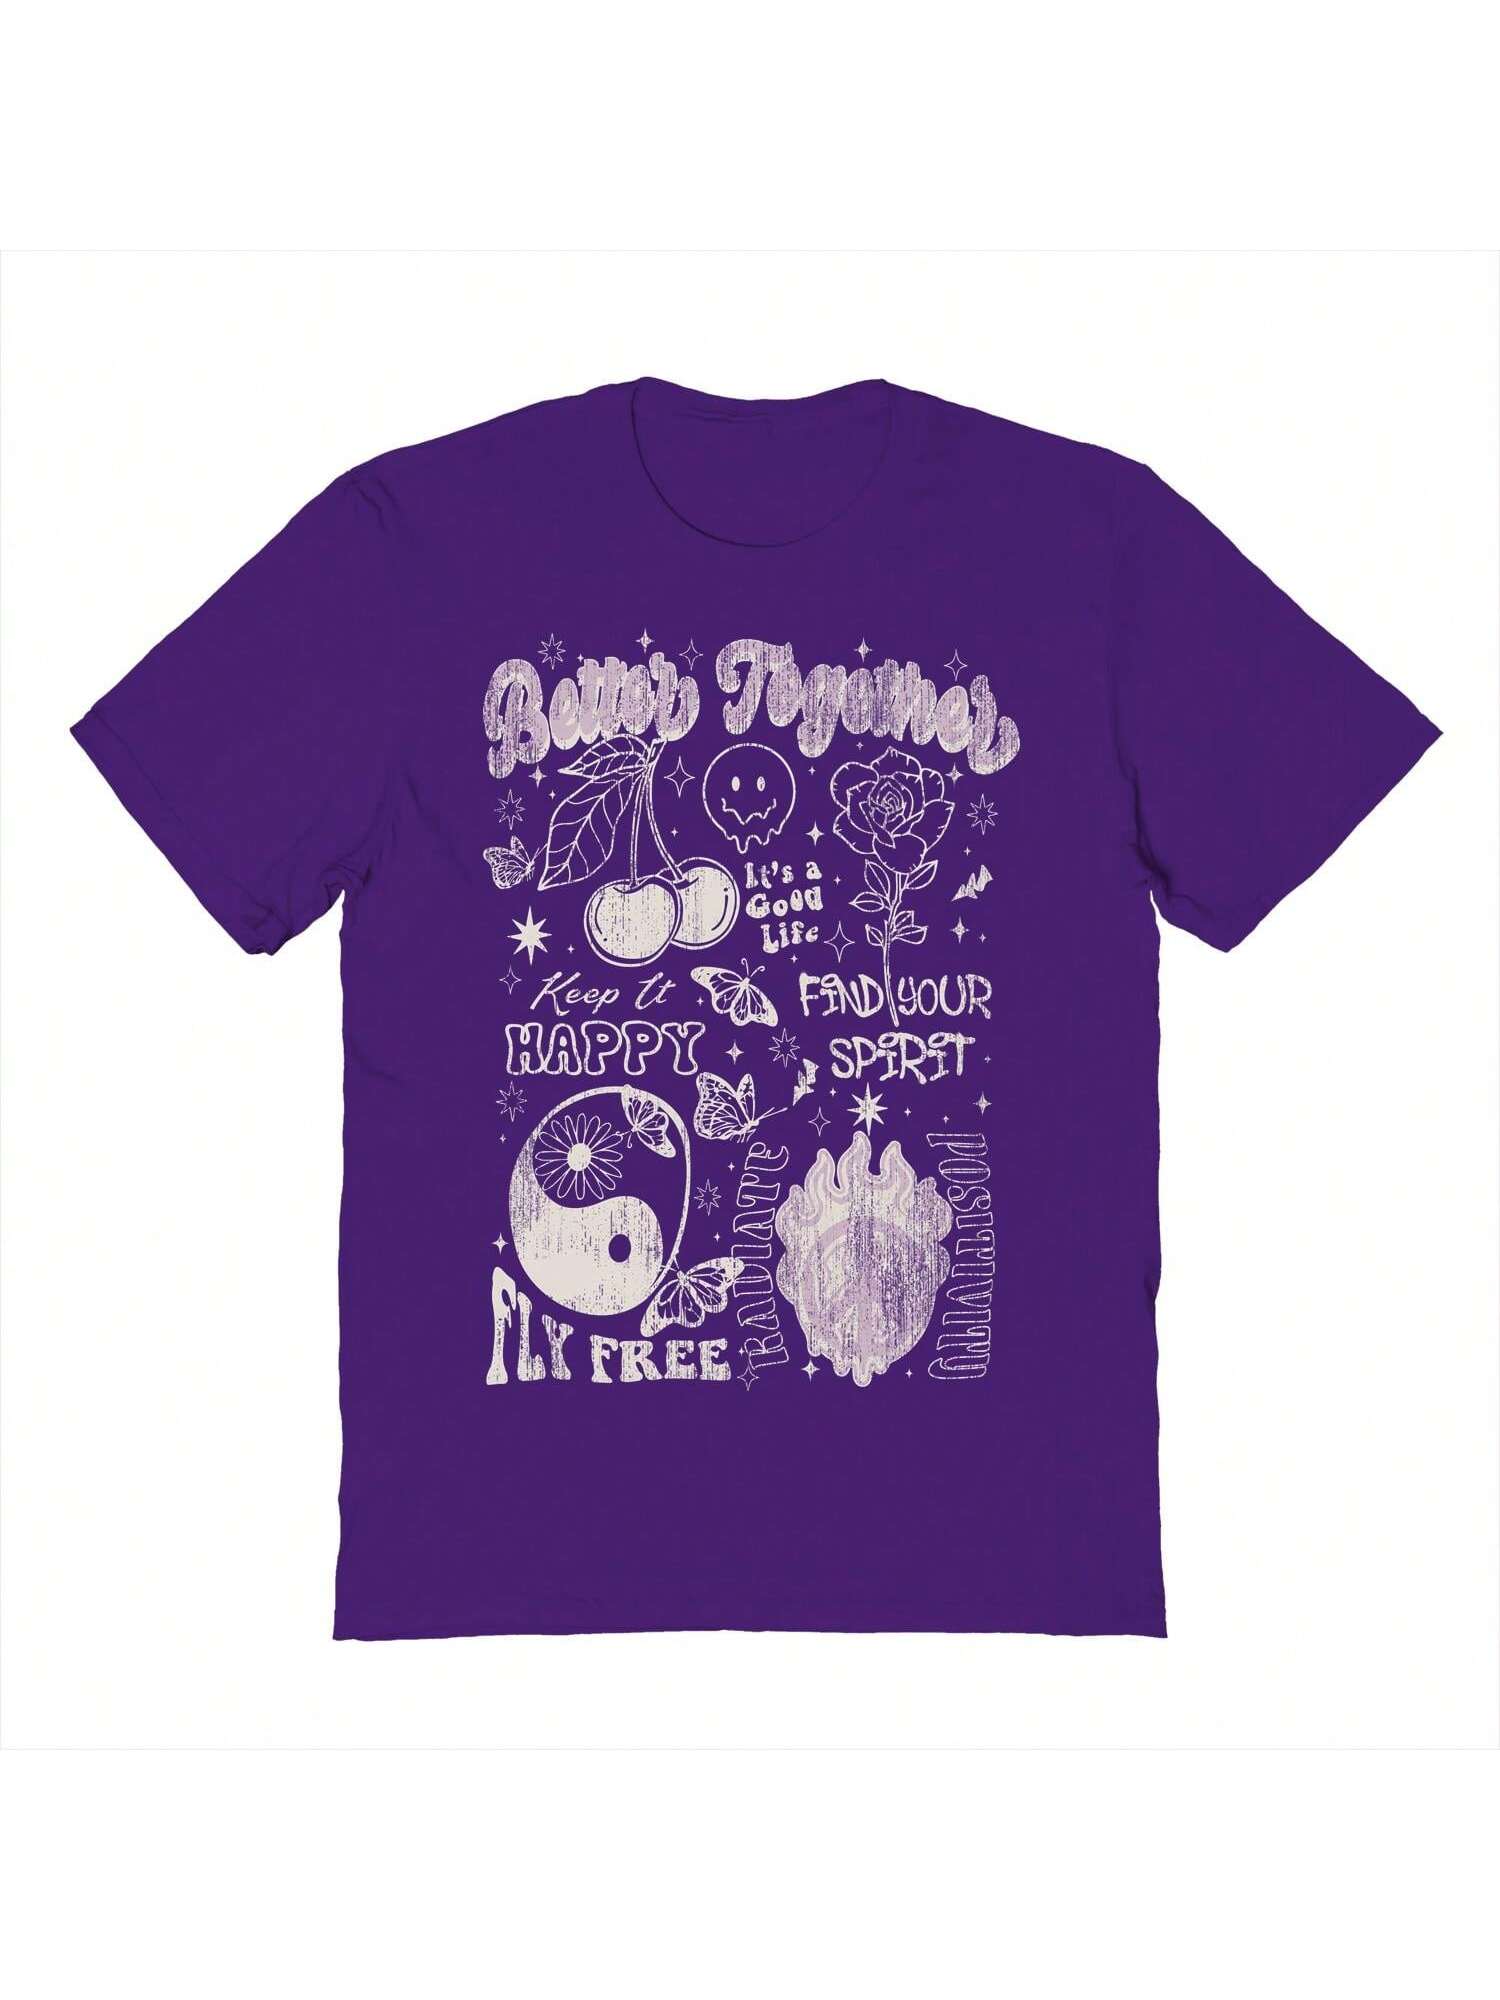 Хлопковая футболка унисекс с короткими рукавами «Почти лучше вместе» с рисунком, фиолетовый